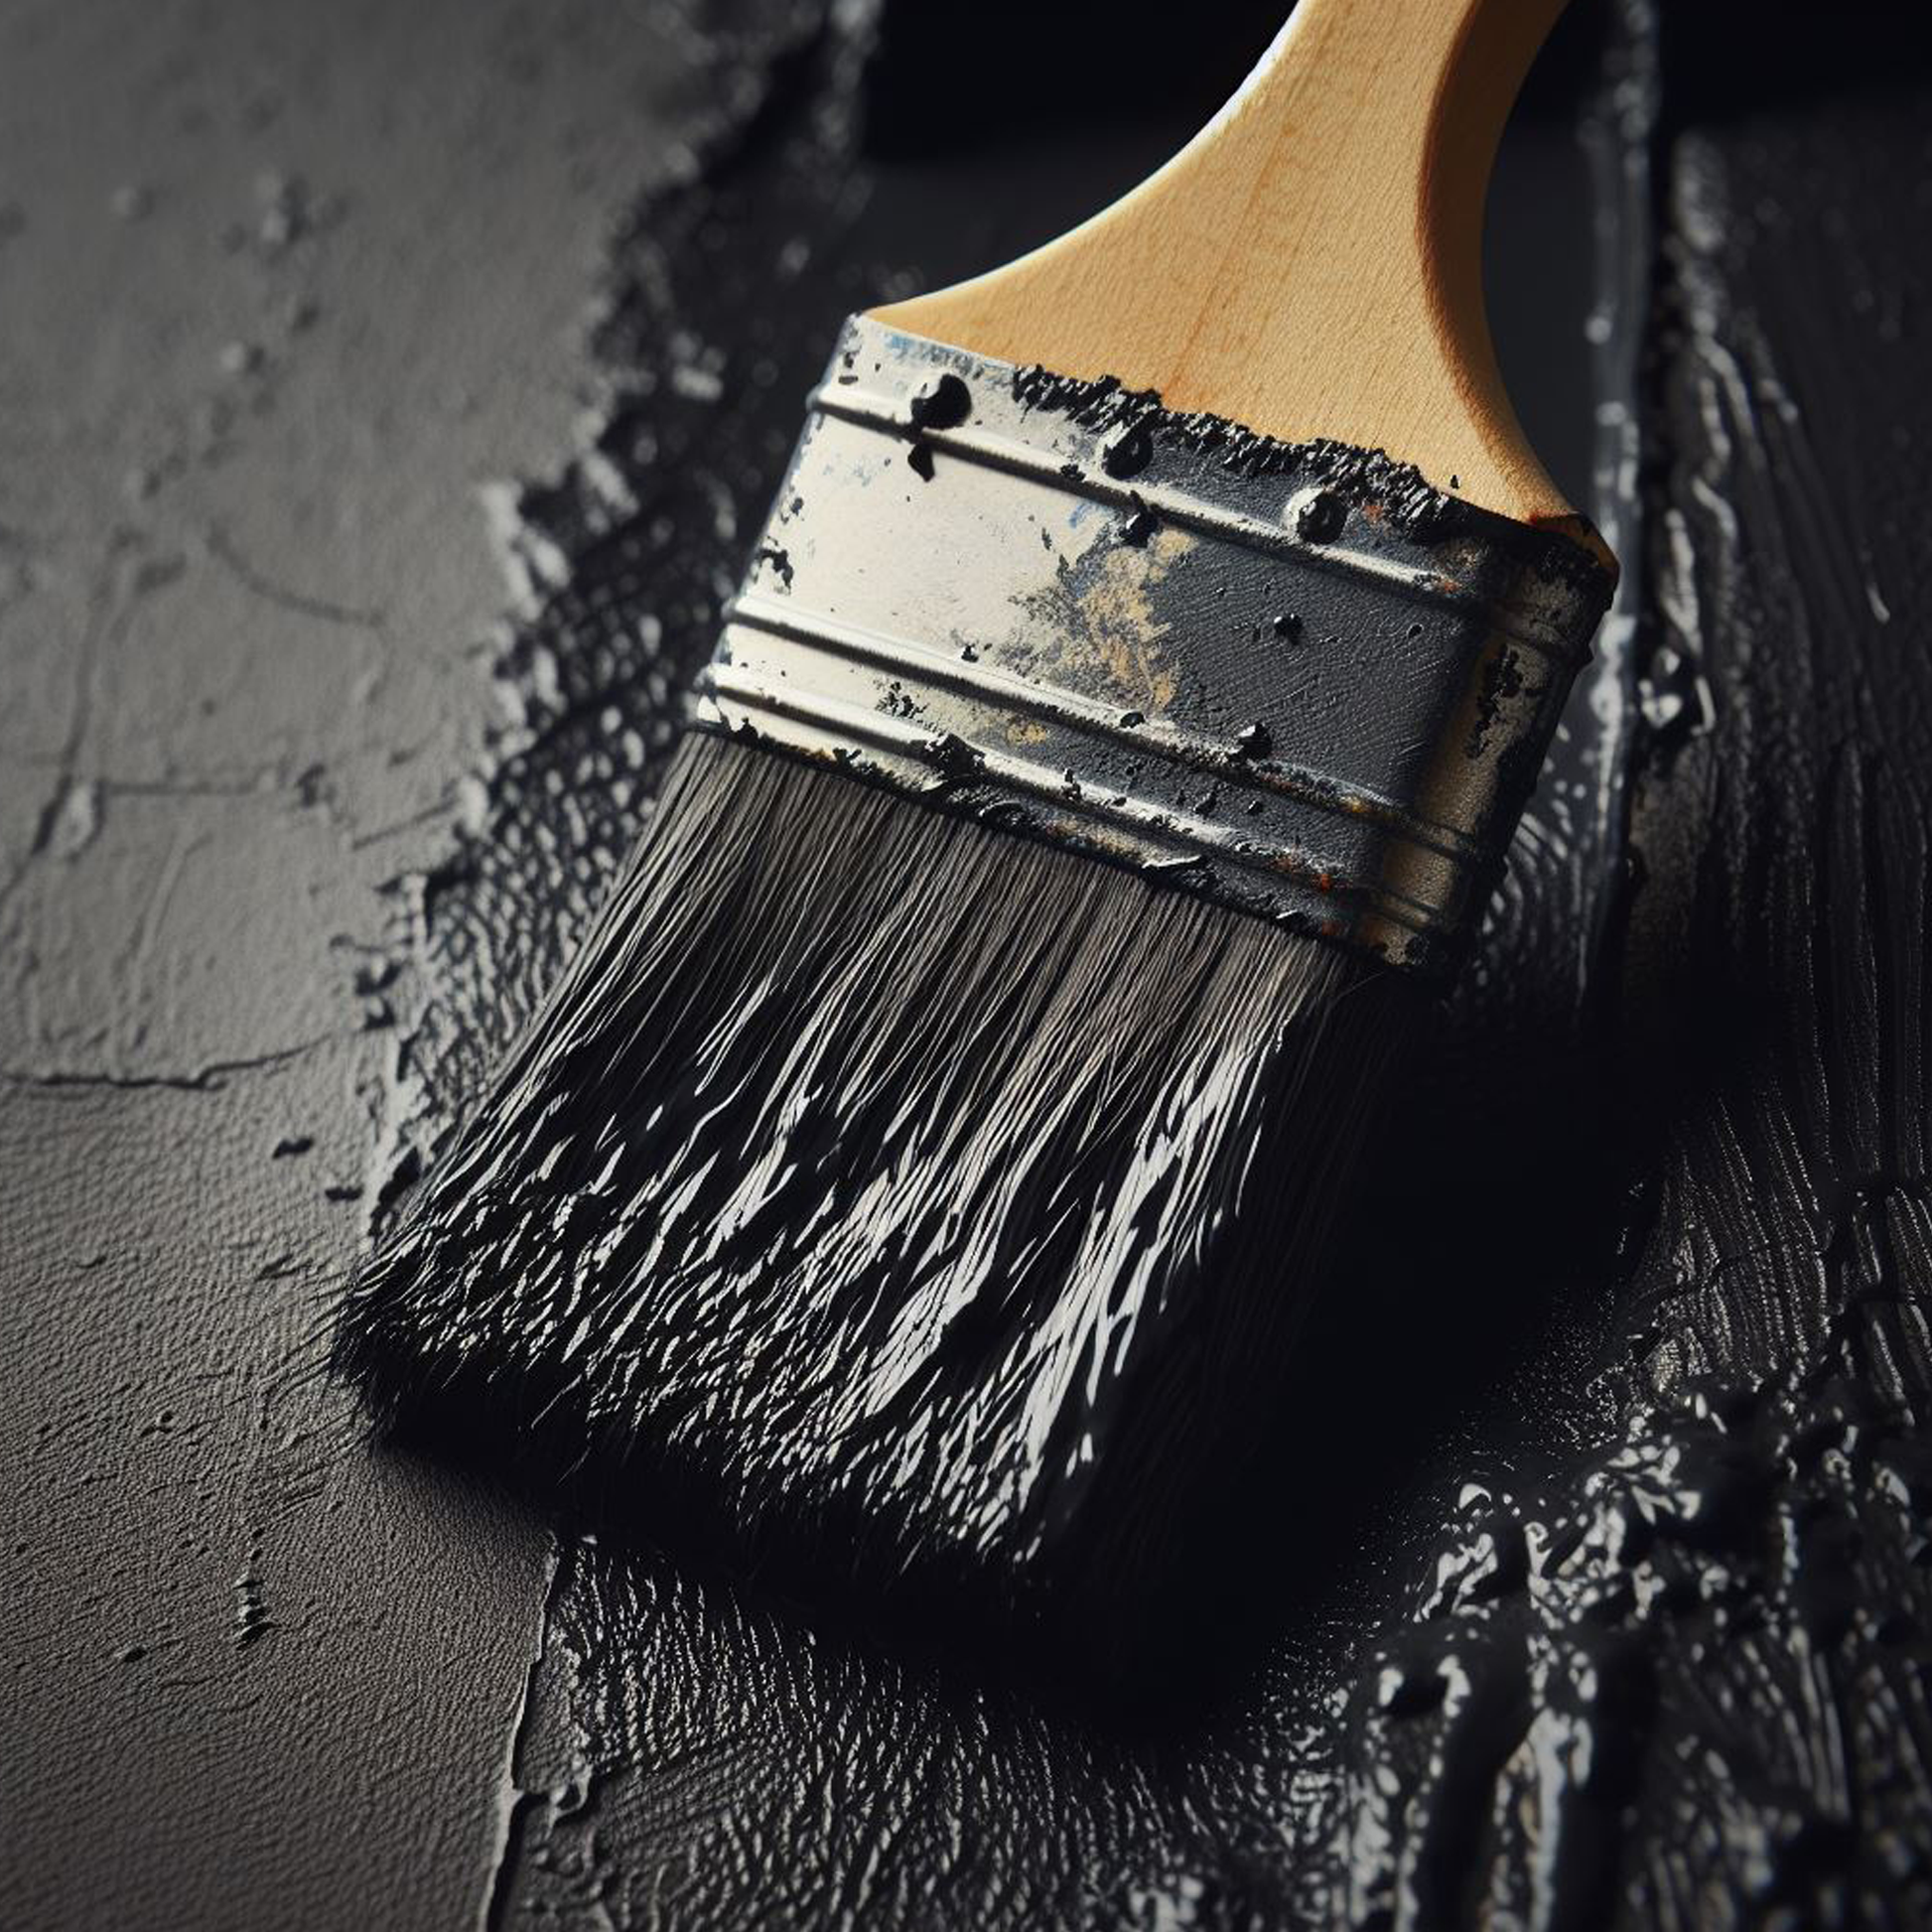 jet black paint brush